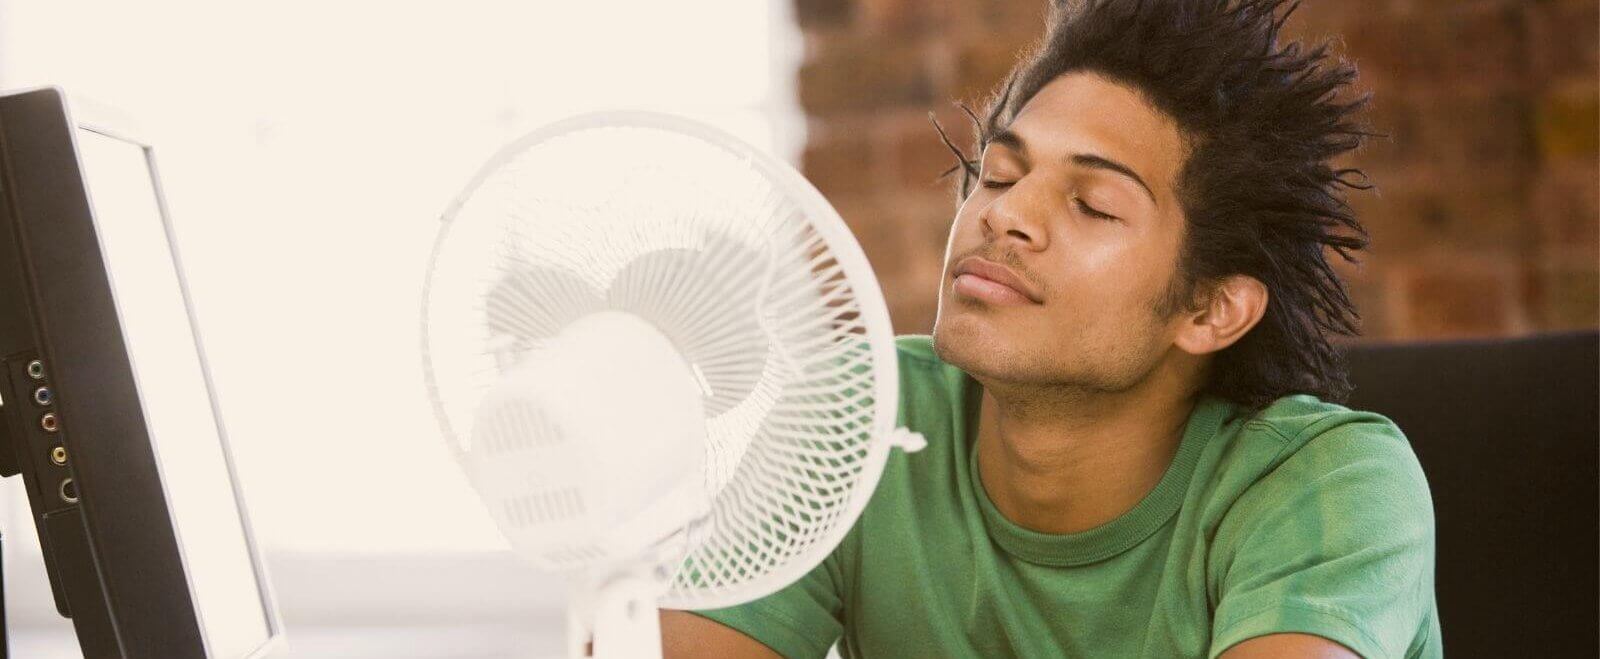 It’s too darn hot - Tipps für das Arbeiten bei Hitze